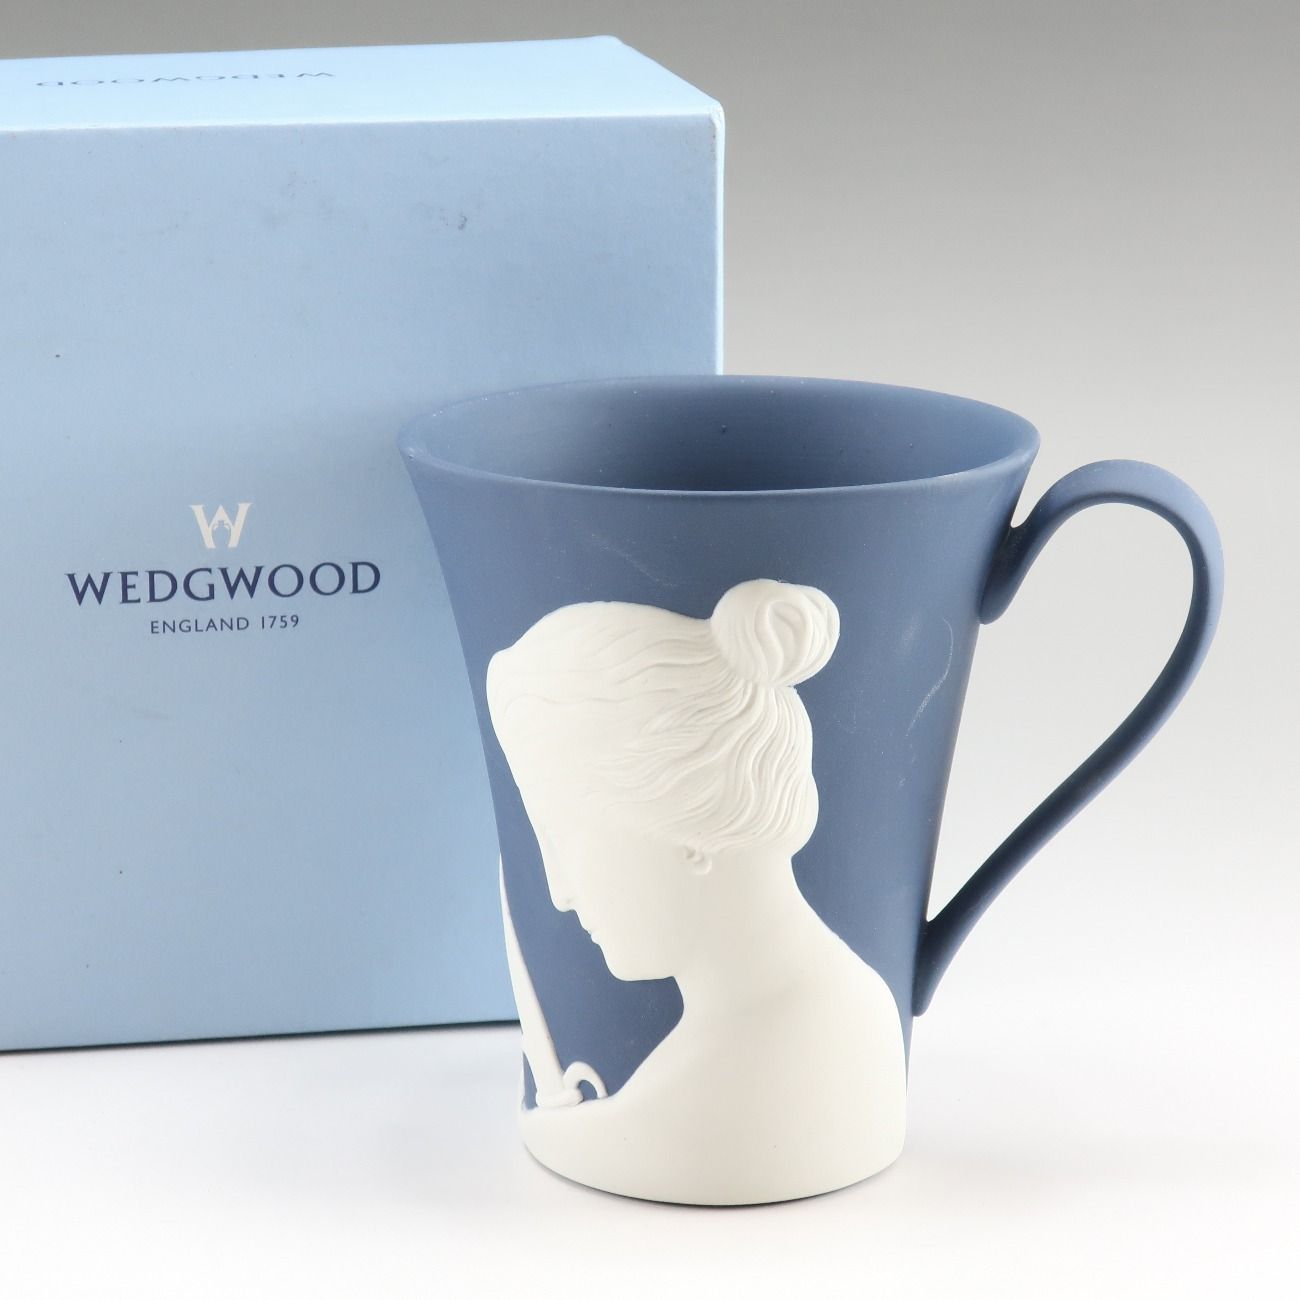 【Wedgwood】ウェッジウッド 250周年記念 ジャスパー マグカップ×1 陶器 ユニセックス 食器